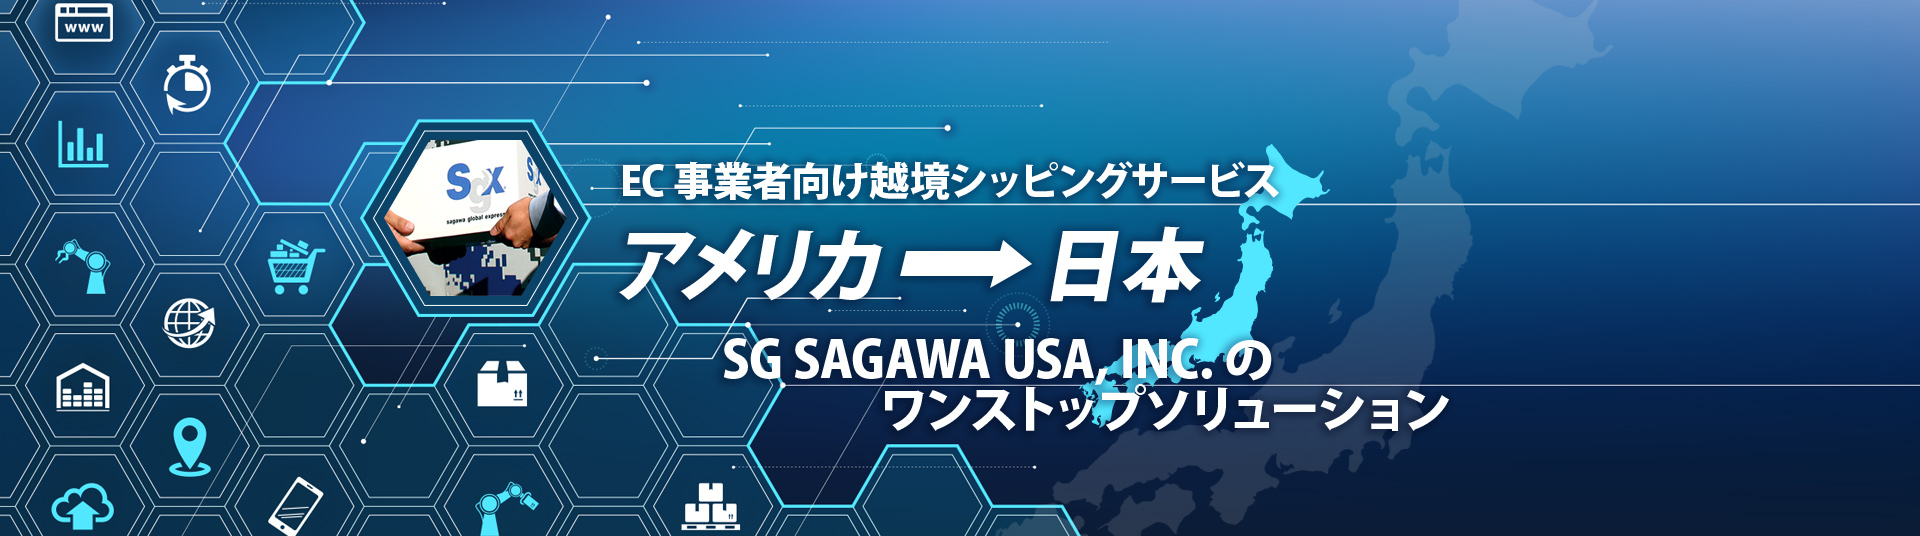 EC事業者向け越境シッピングサービス、米国から日本、SG SAGAWAのワンストップソリューション